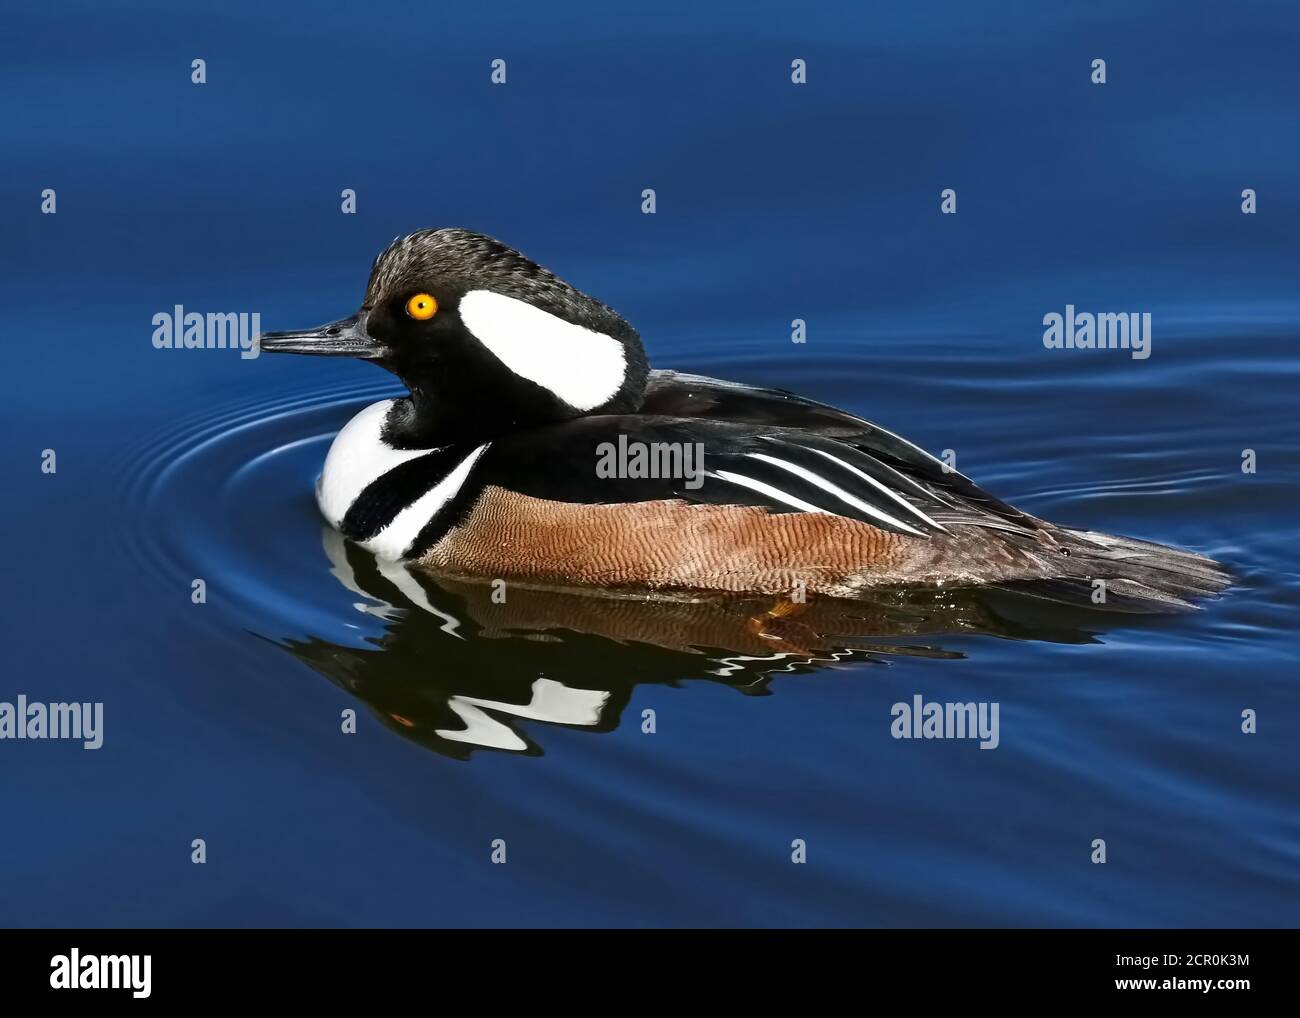 Eine Nahaufnahme einer Merganser-Ente mit Kapuze in ruhigem, samtig blauem Wasser. Stockfoto